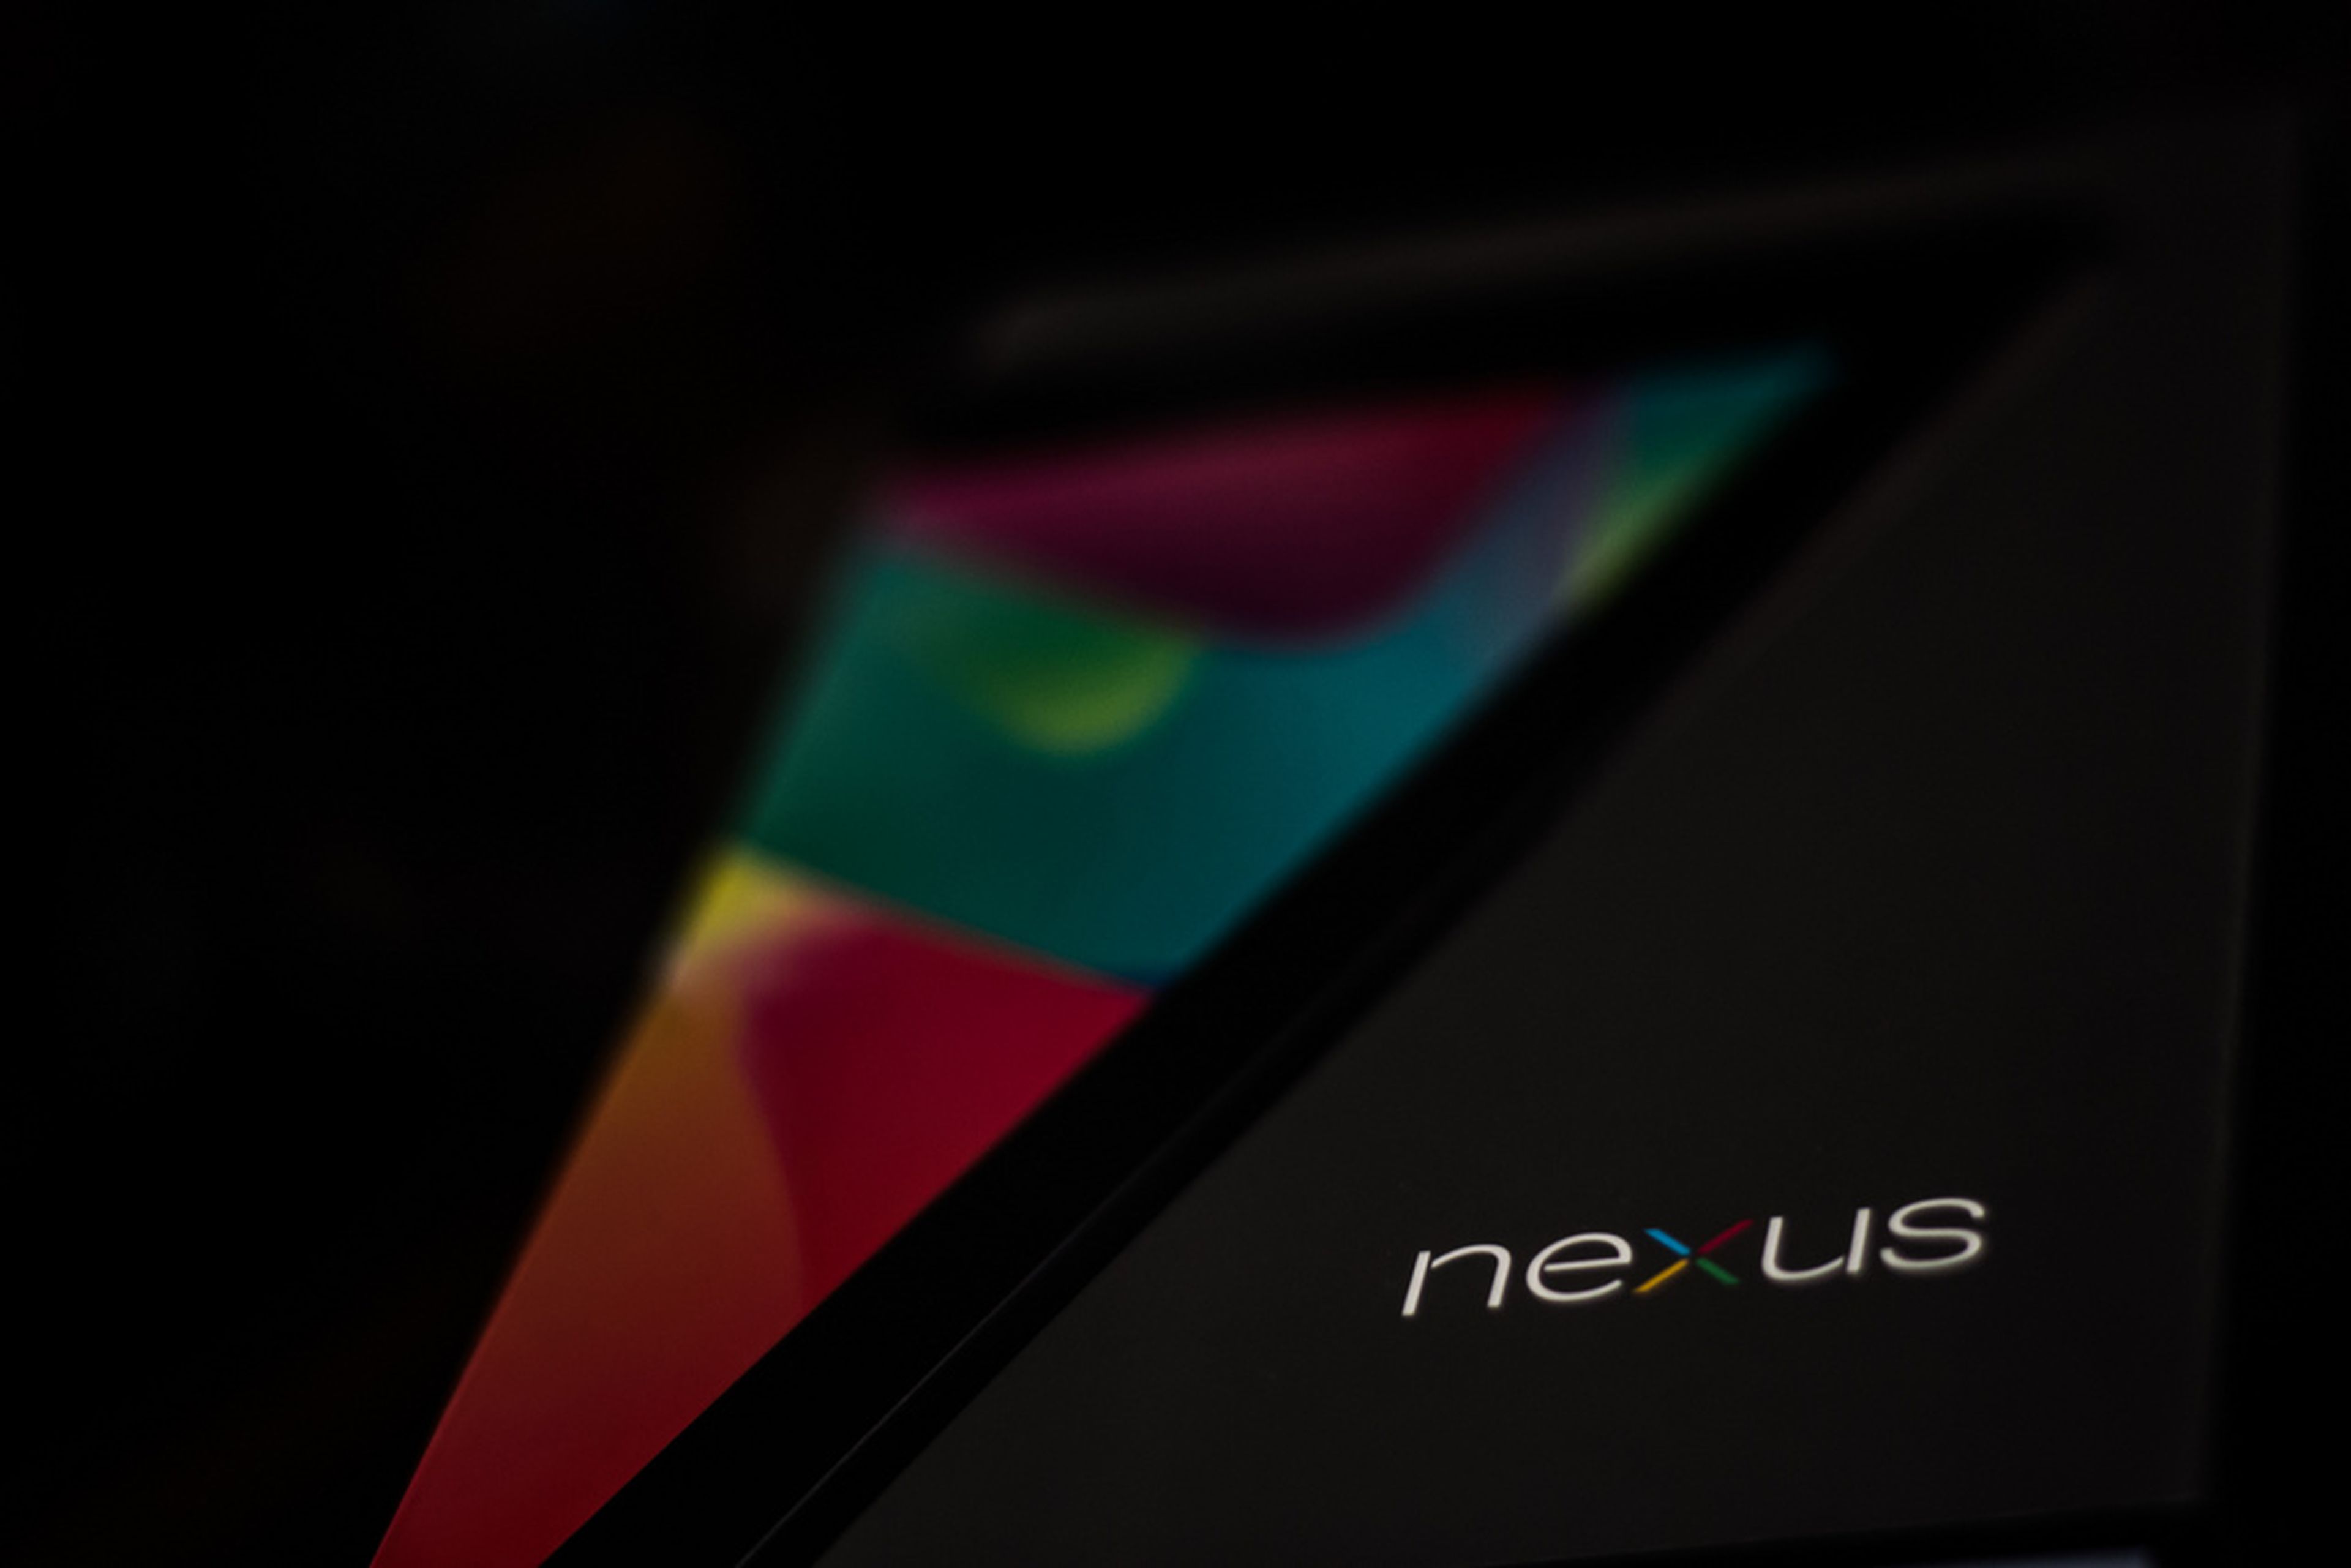 Nueva Nexus 7, nuevos fallos, ahora en el panel táctil